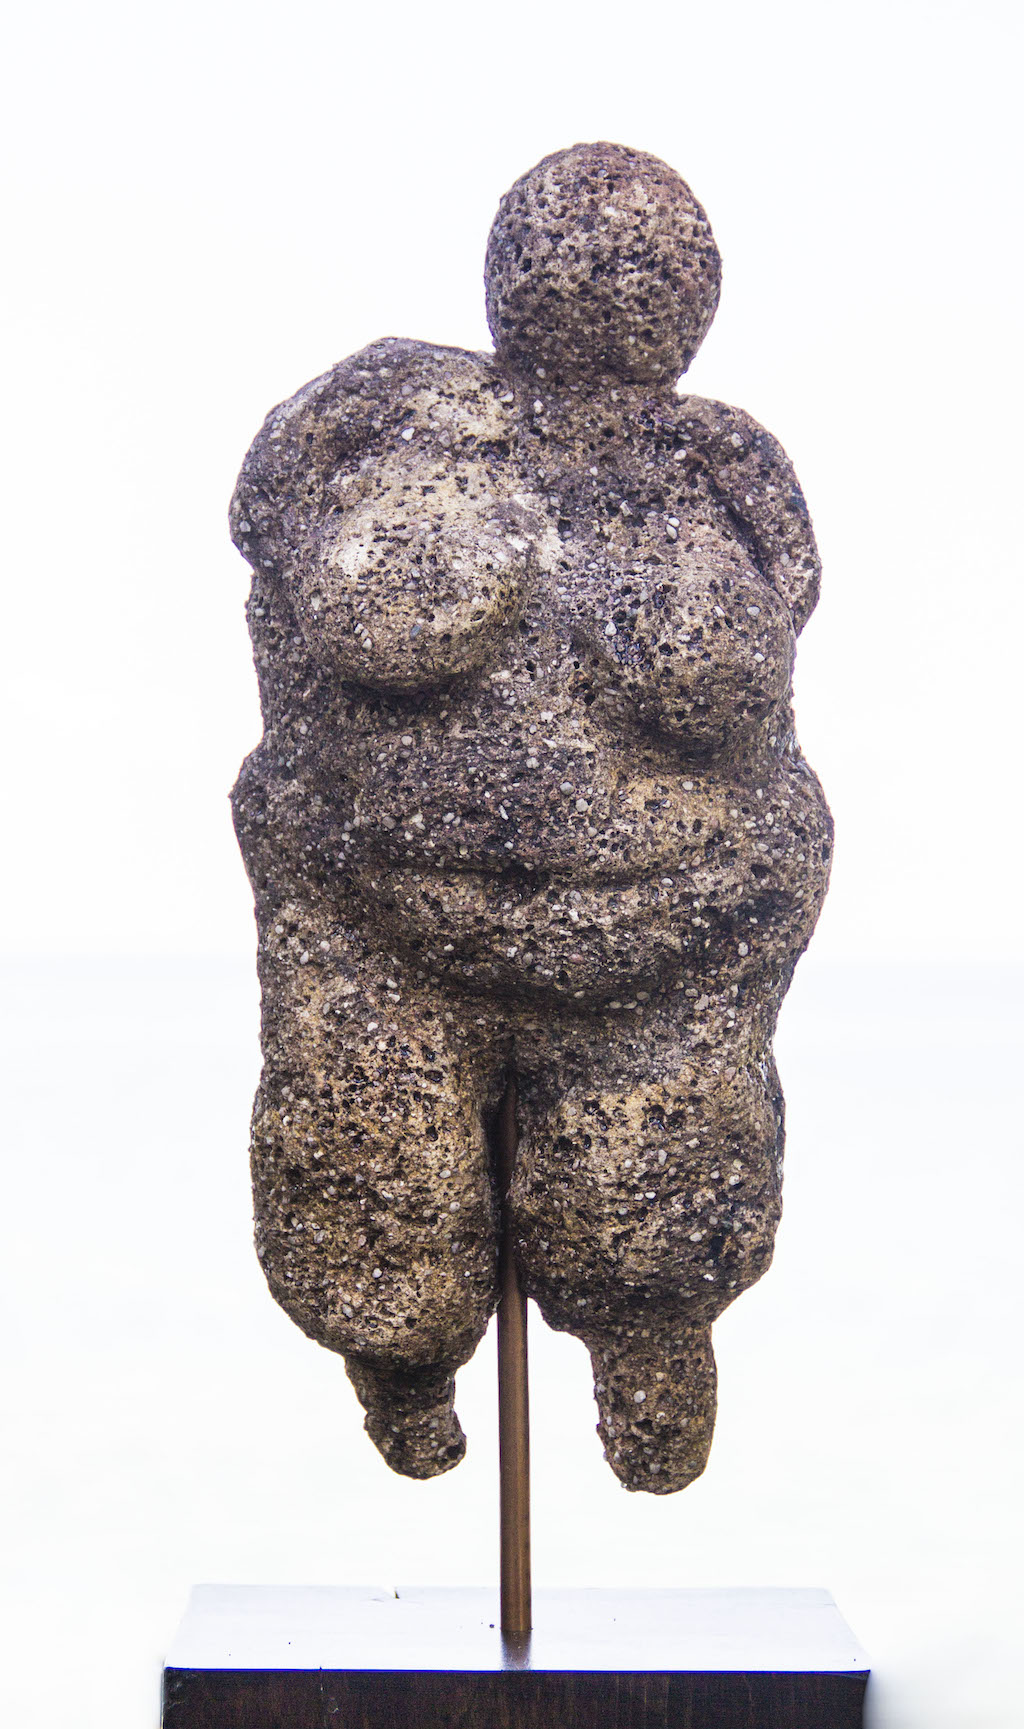 voluptuous woman sculpture closeup